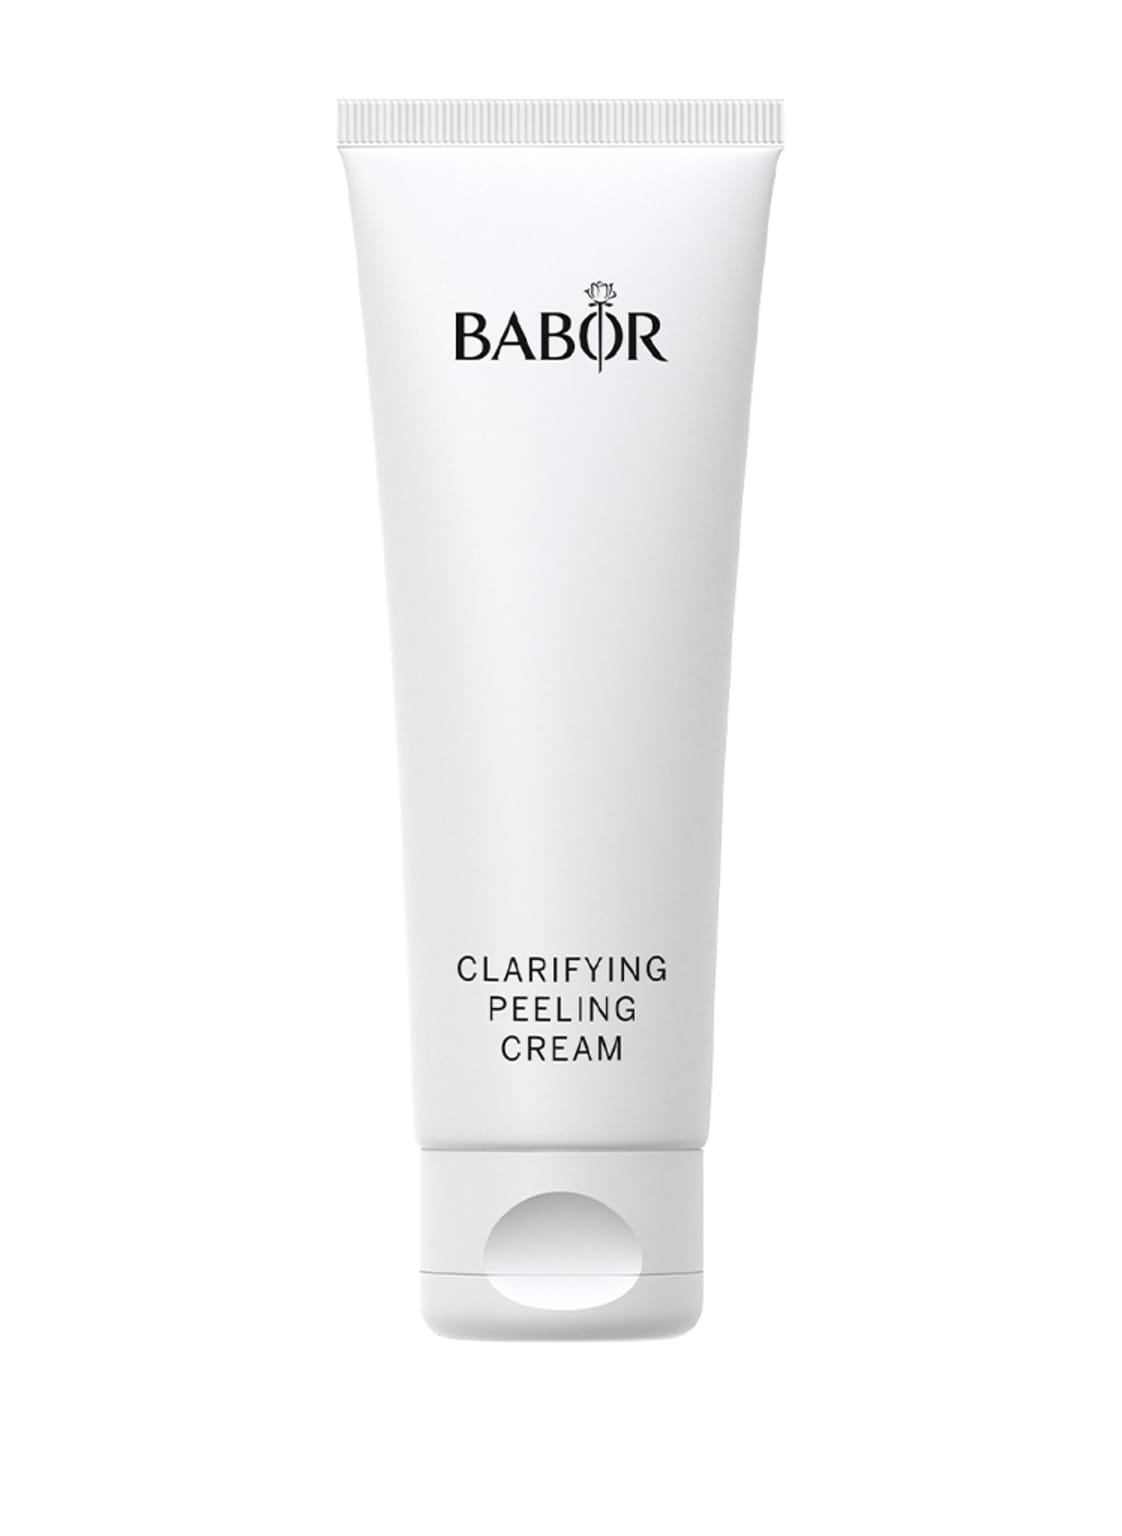 Image of Babor Cleansing Clarifying Peeling Cream 50 ml